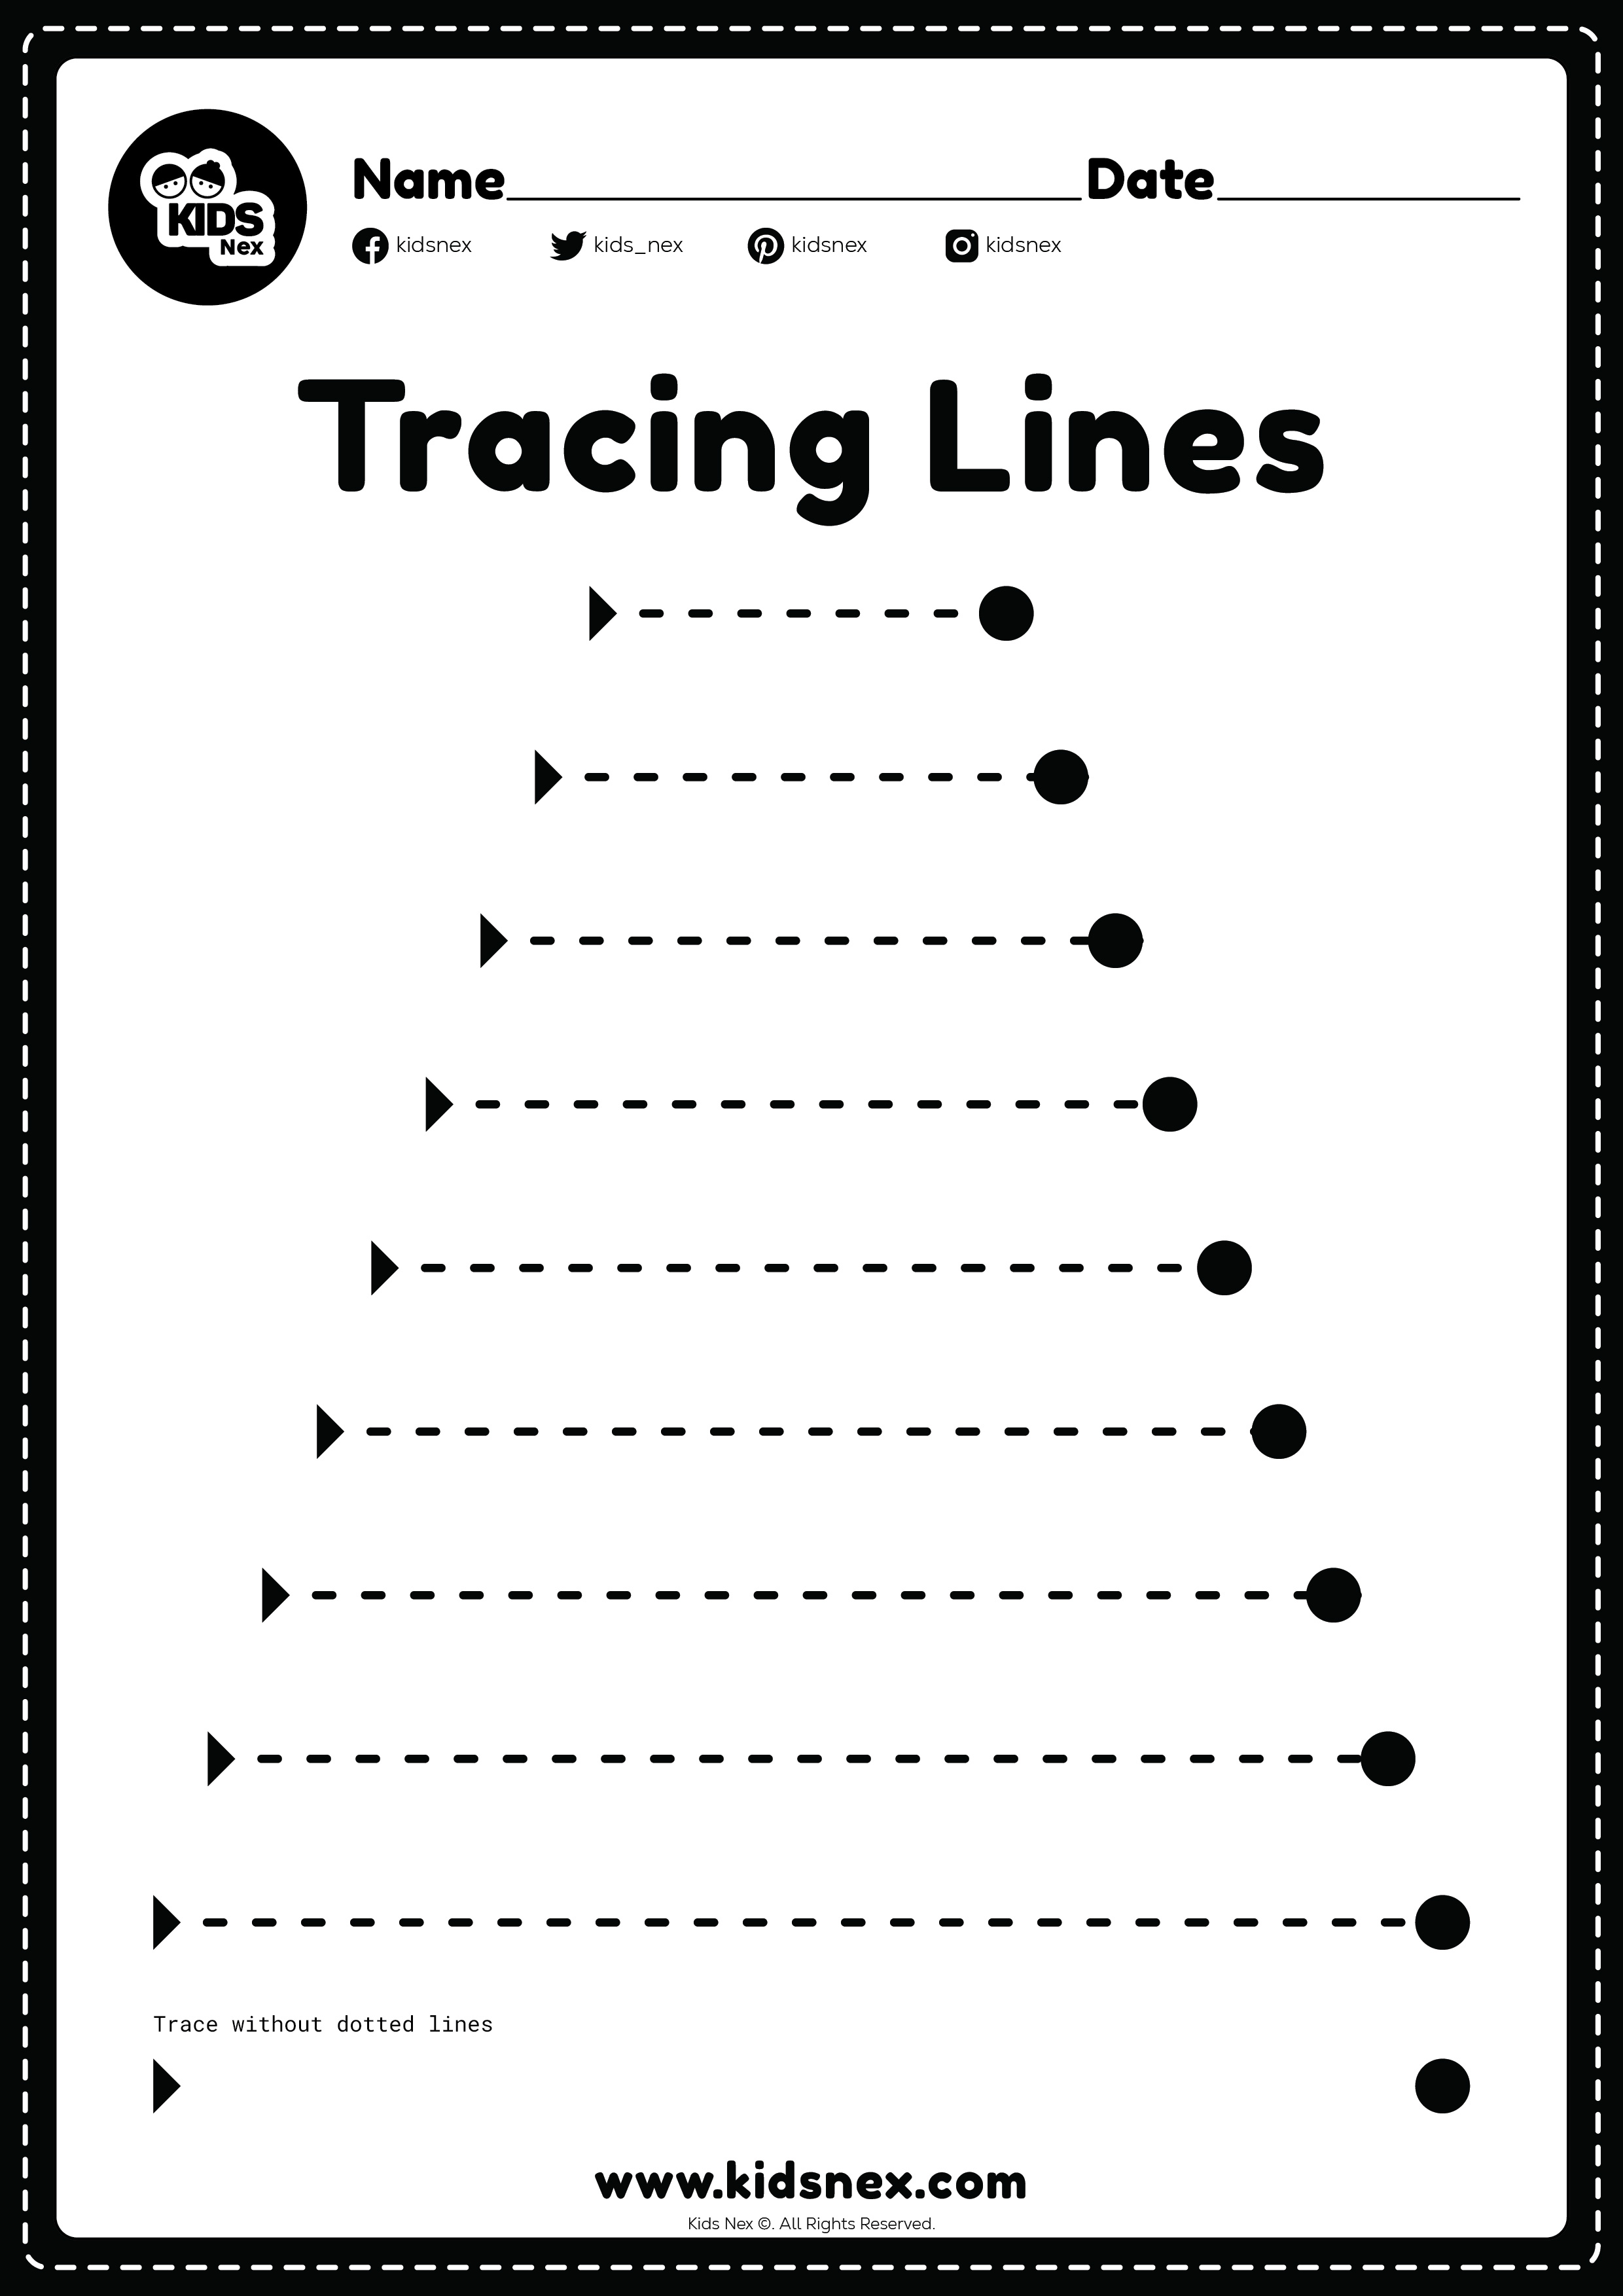 Free Printable Tracing Lines Worksheet | Kids Nex